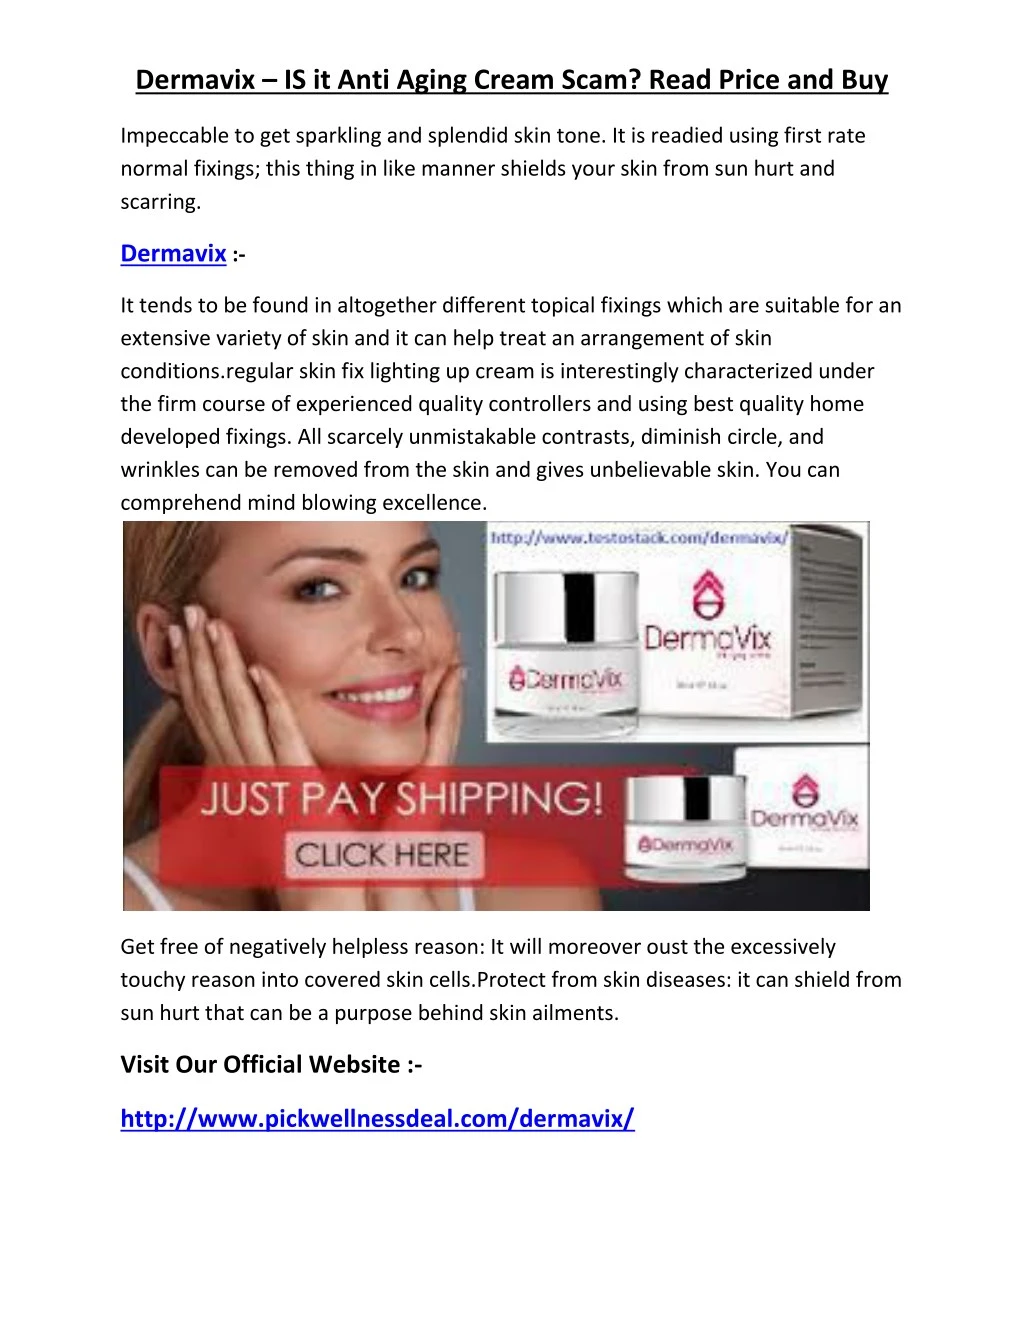 dermavix is it anti aging cream scam read price